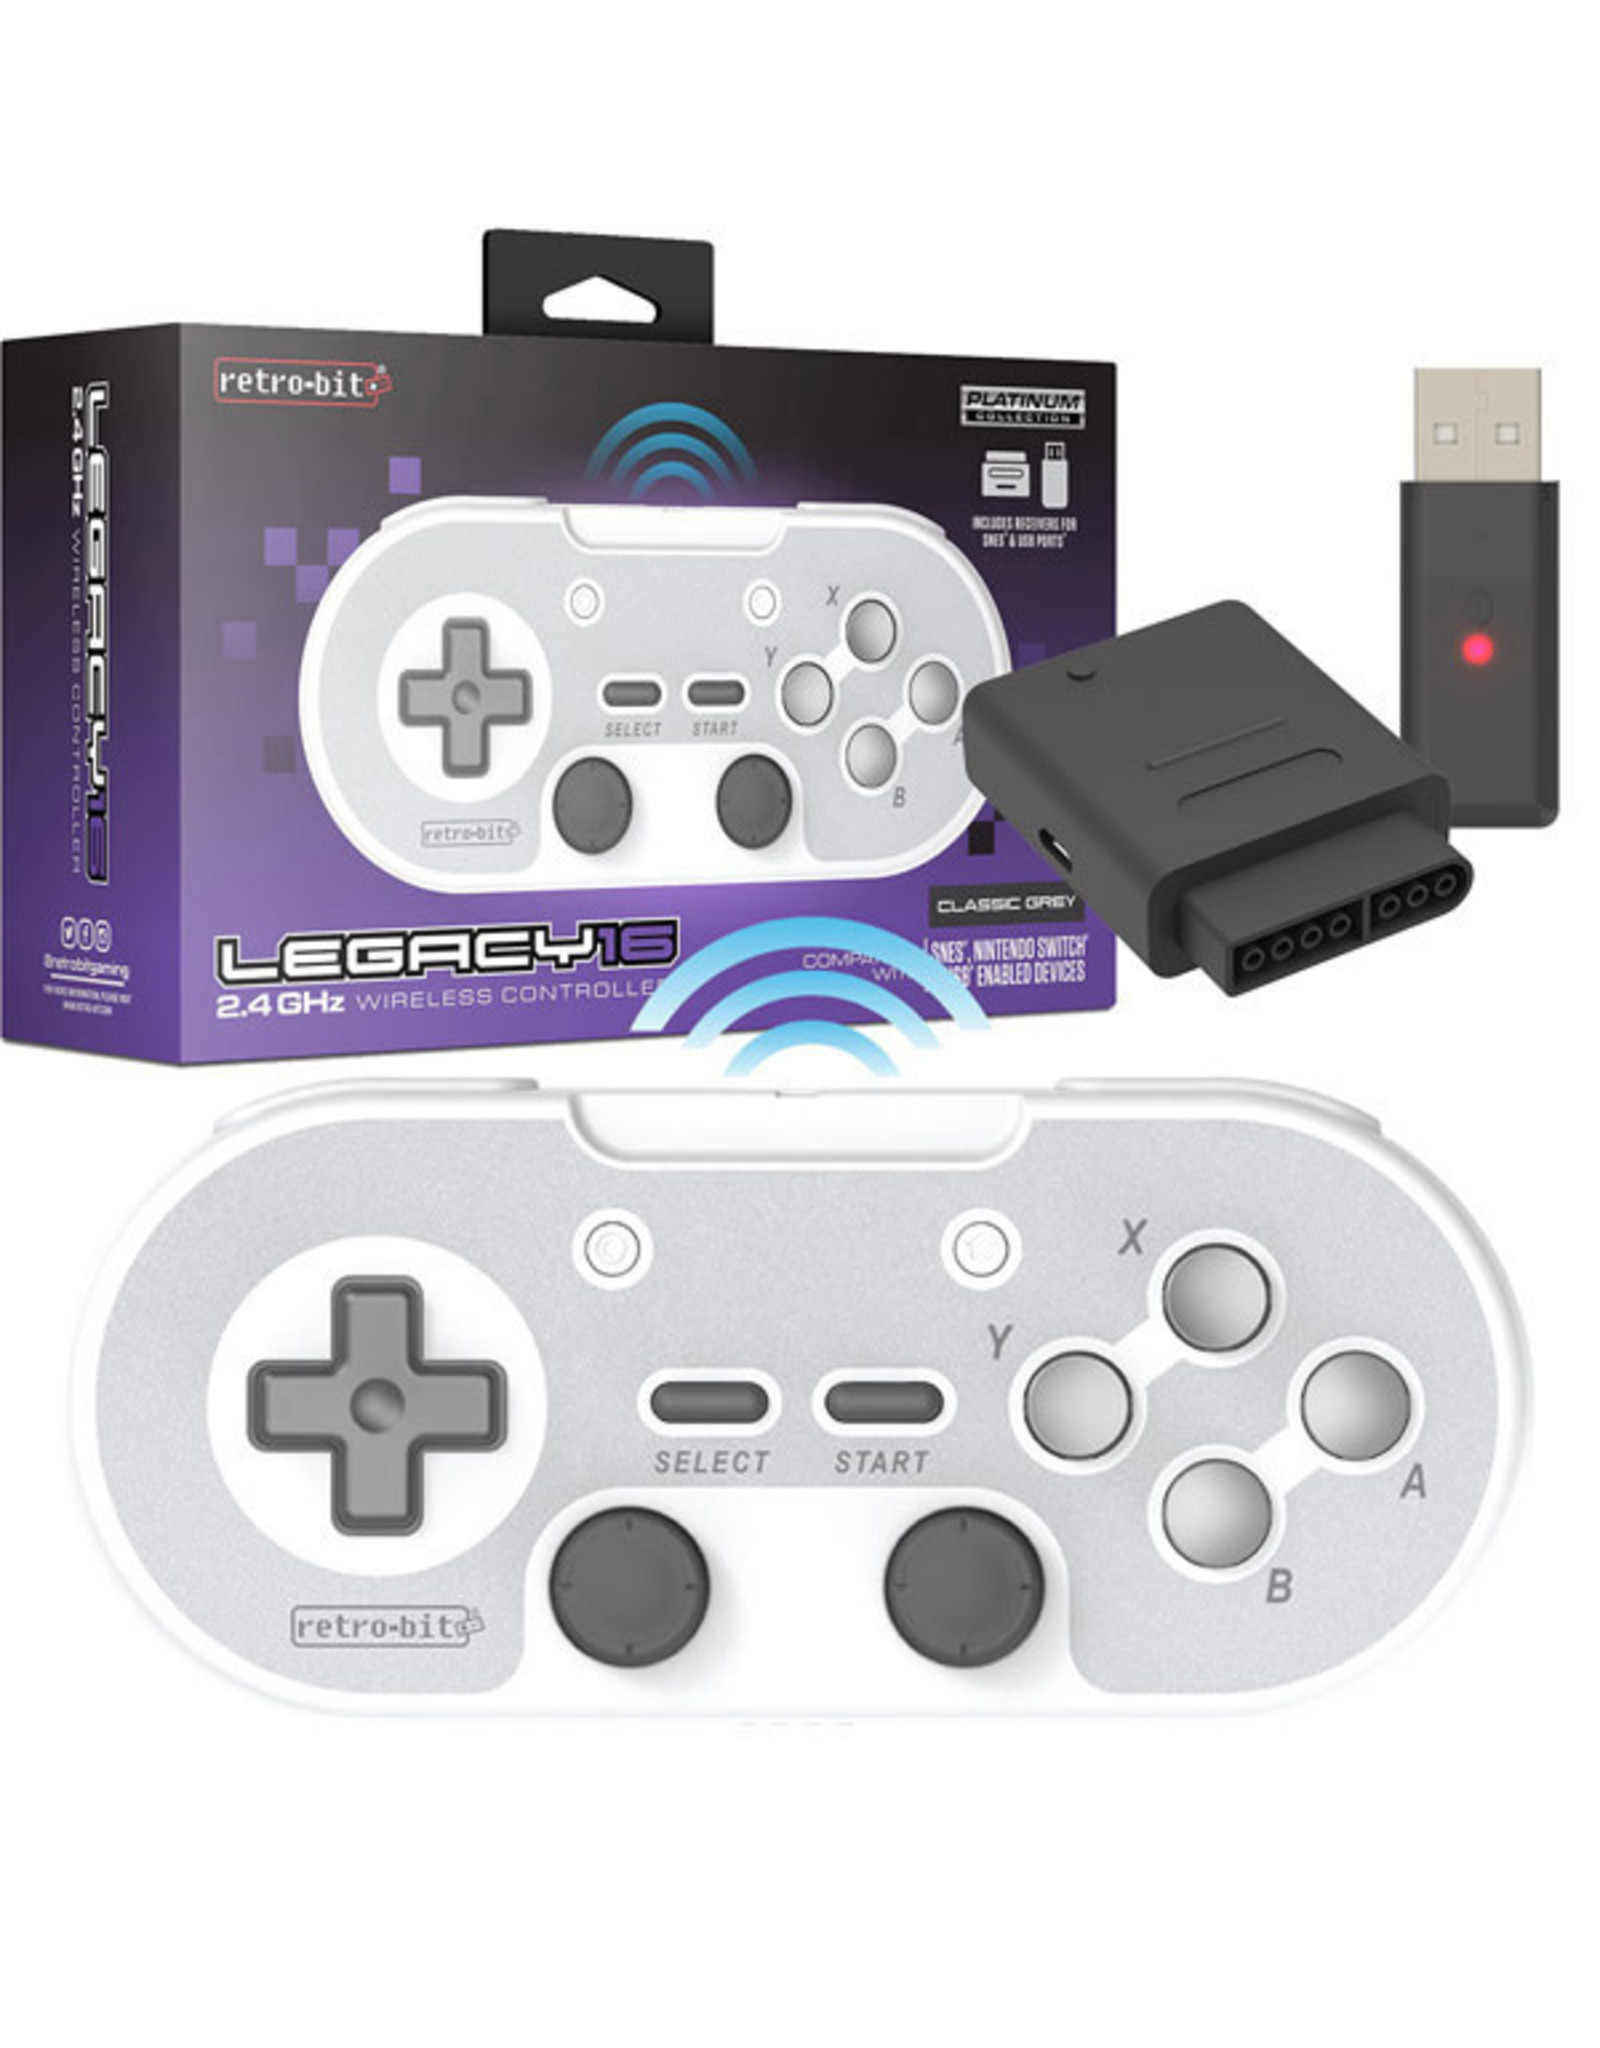 retro-bit - Super Nintendo - Legacy16 (Classic Grey) [2.4GHz Wireless]